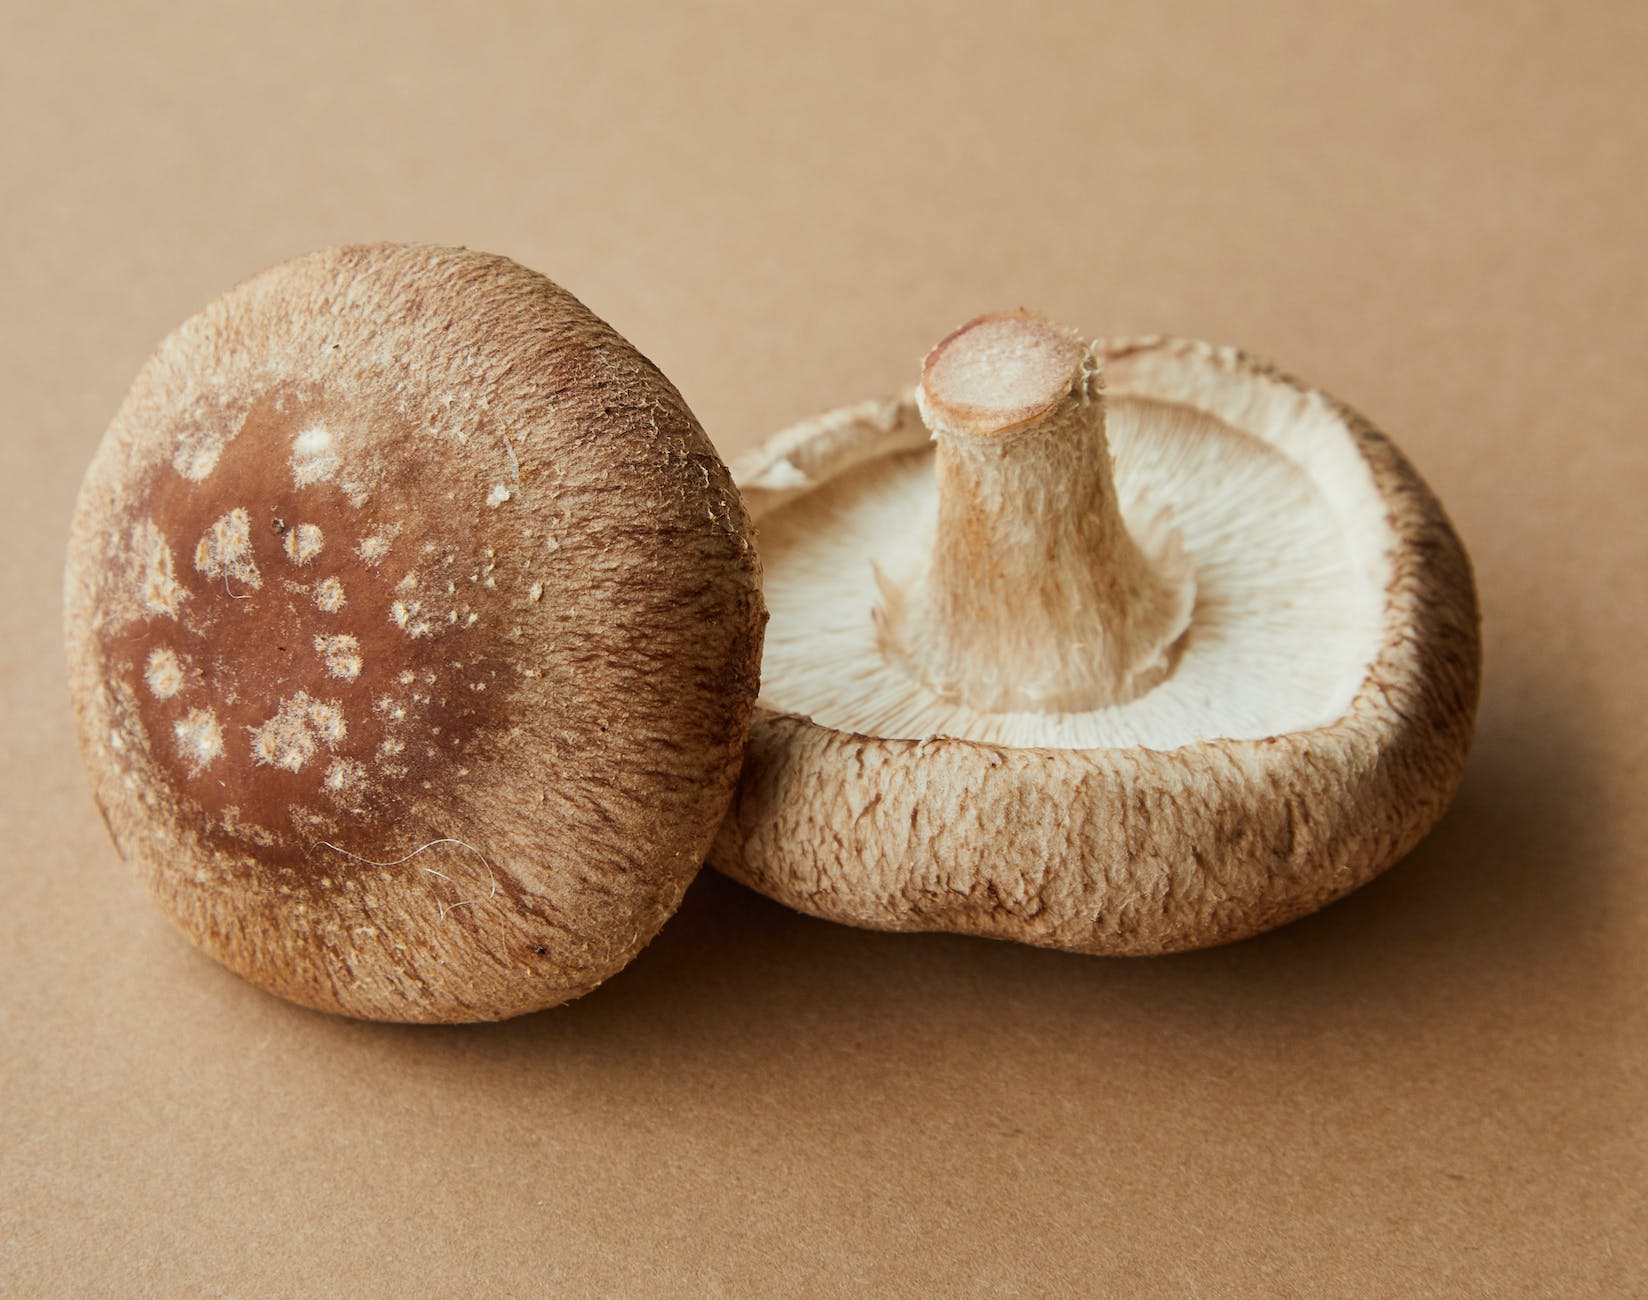 brown mushrooms on beige surface